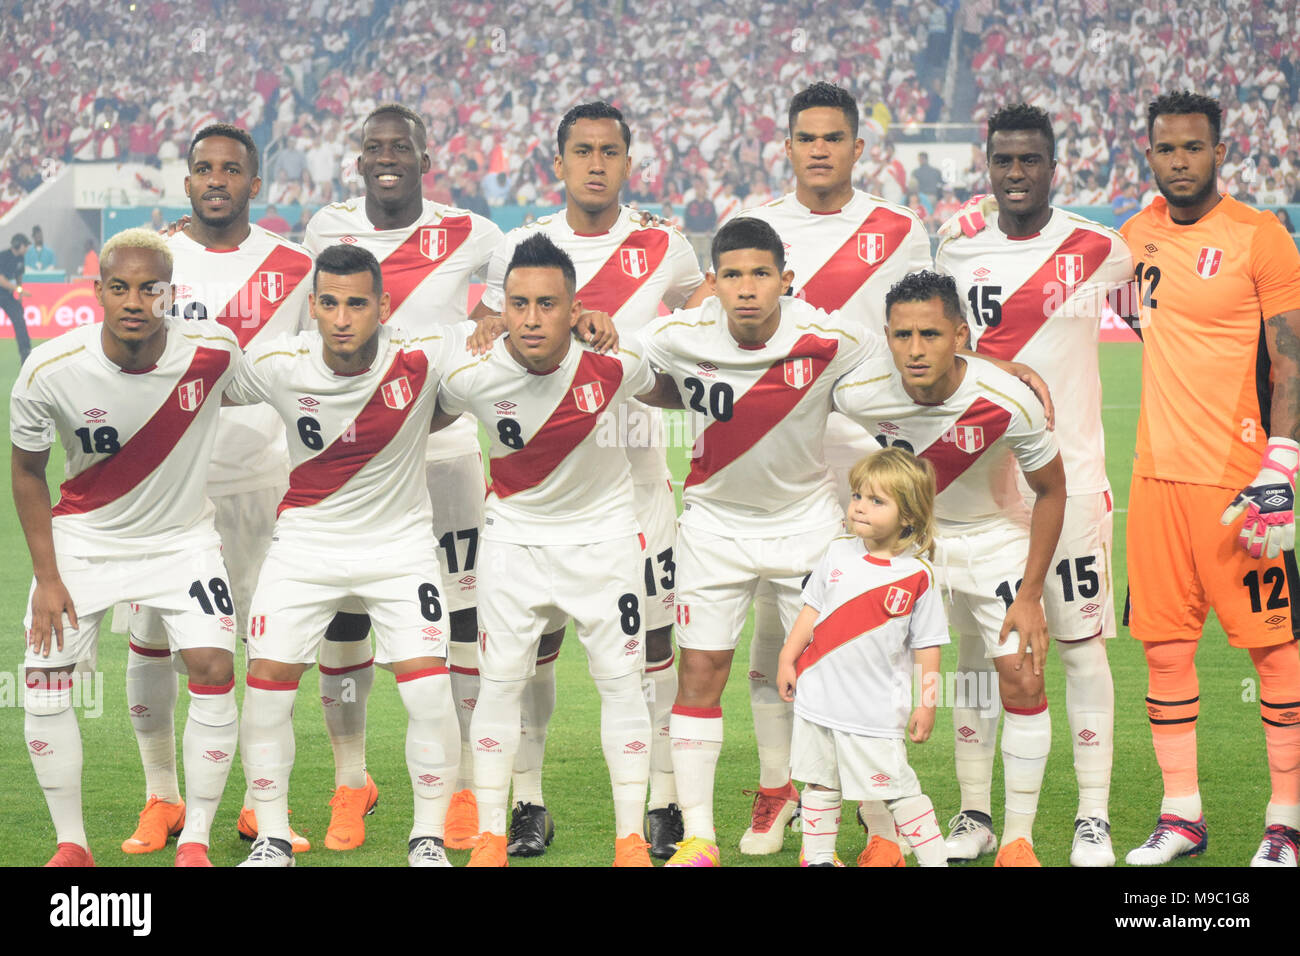 Miami, Floride, USA. Mar 23, 2018. L'équipe péruvienne pose pour la photo  avant le match contre la Croatie.L'équipe nationale de football croate a  joué un match amical contre le Pérou le 23